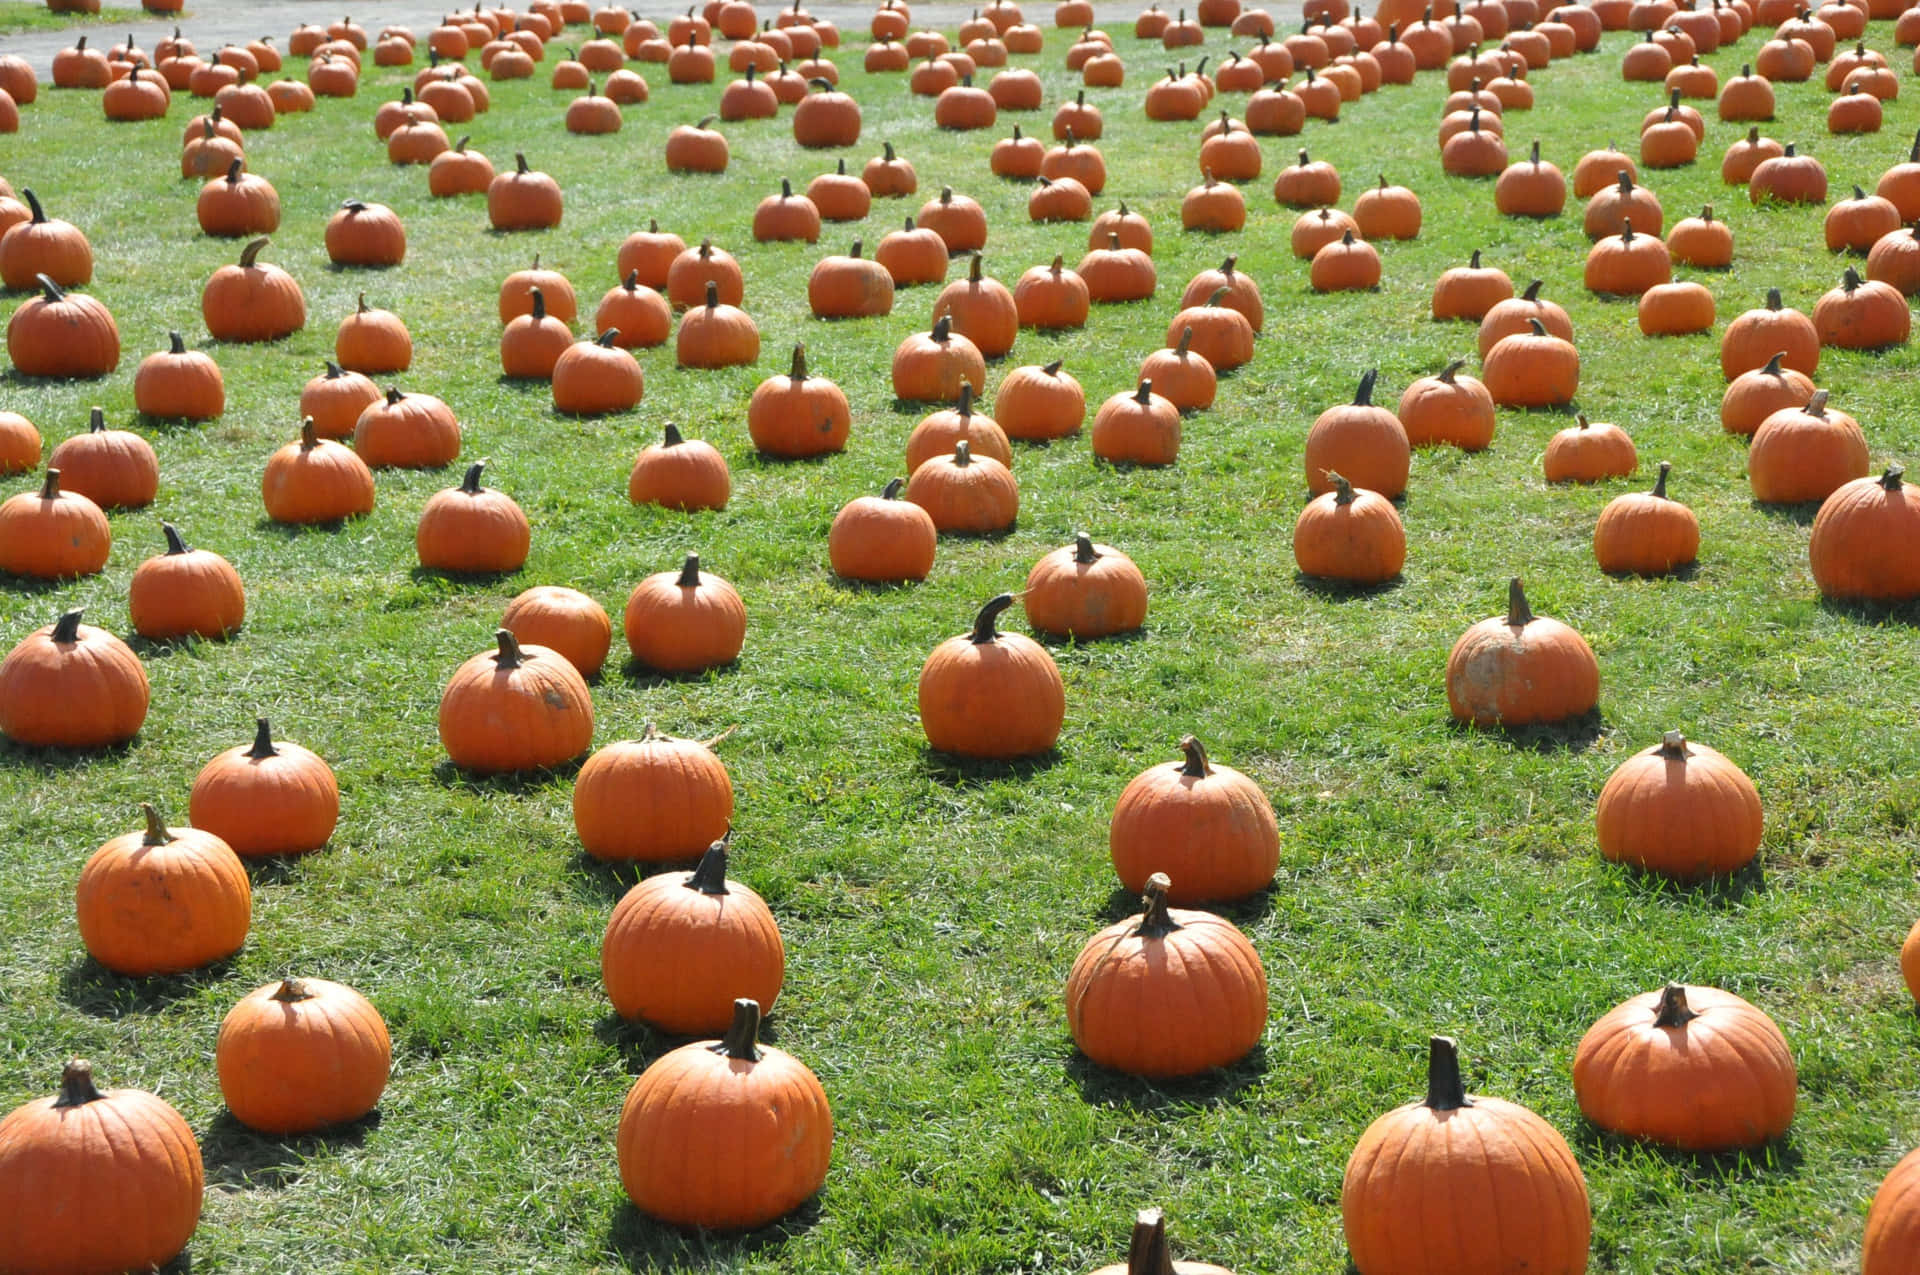 A Field Of Pumpkins On The Grass Wallpaper